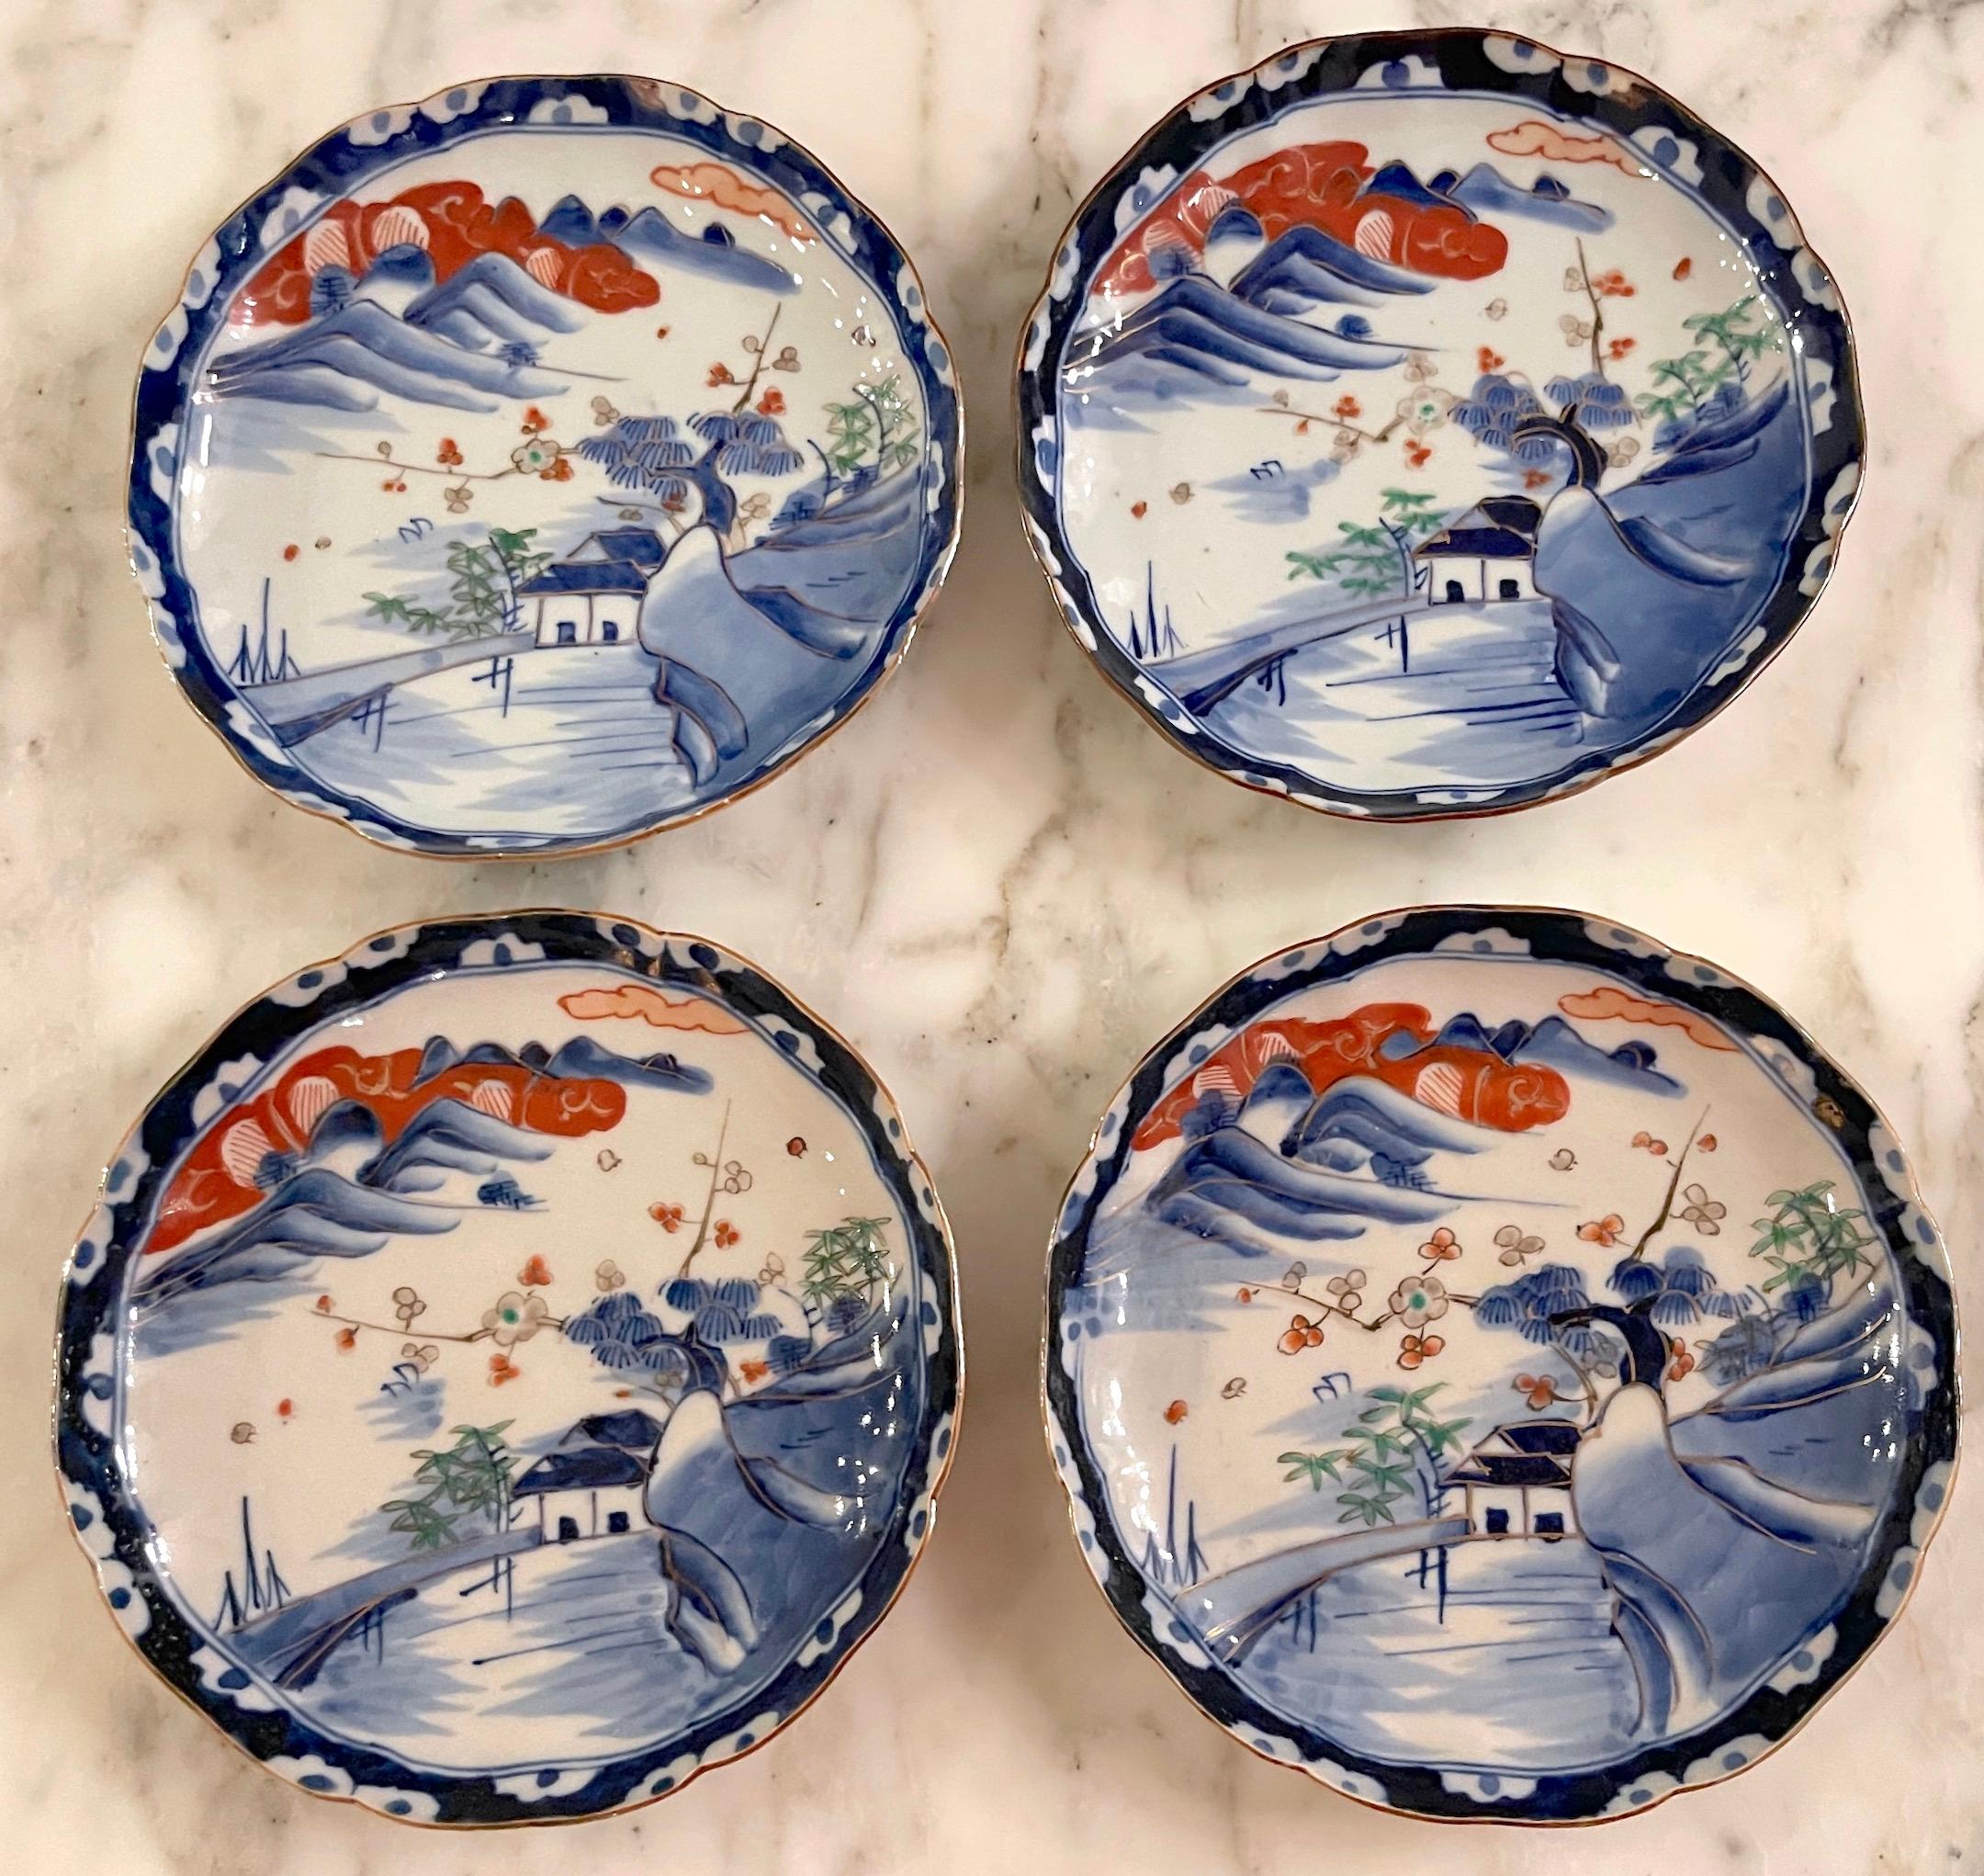 Vier szenische Imari-Teller mit Wellenschliff aus der Meiji-Periode, Fukagawa zugeschrieben 
Japan, um 1905

Diese vier Imari-Teller mit Wellenschliff aus der Meiji-Zeit sind exquisite Beispiele japanischer Porzellankunst. Die Teller werden dem Ofen